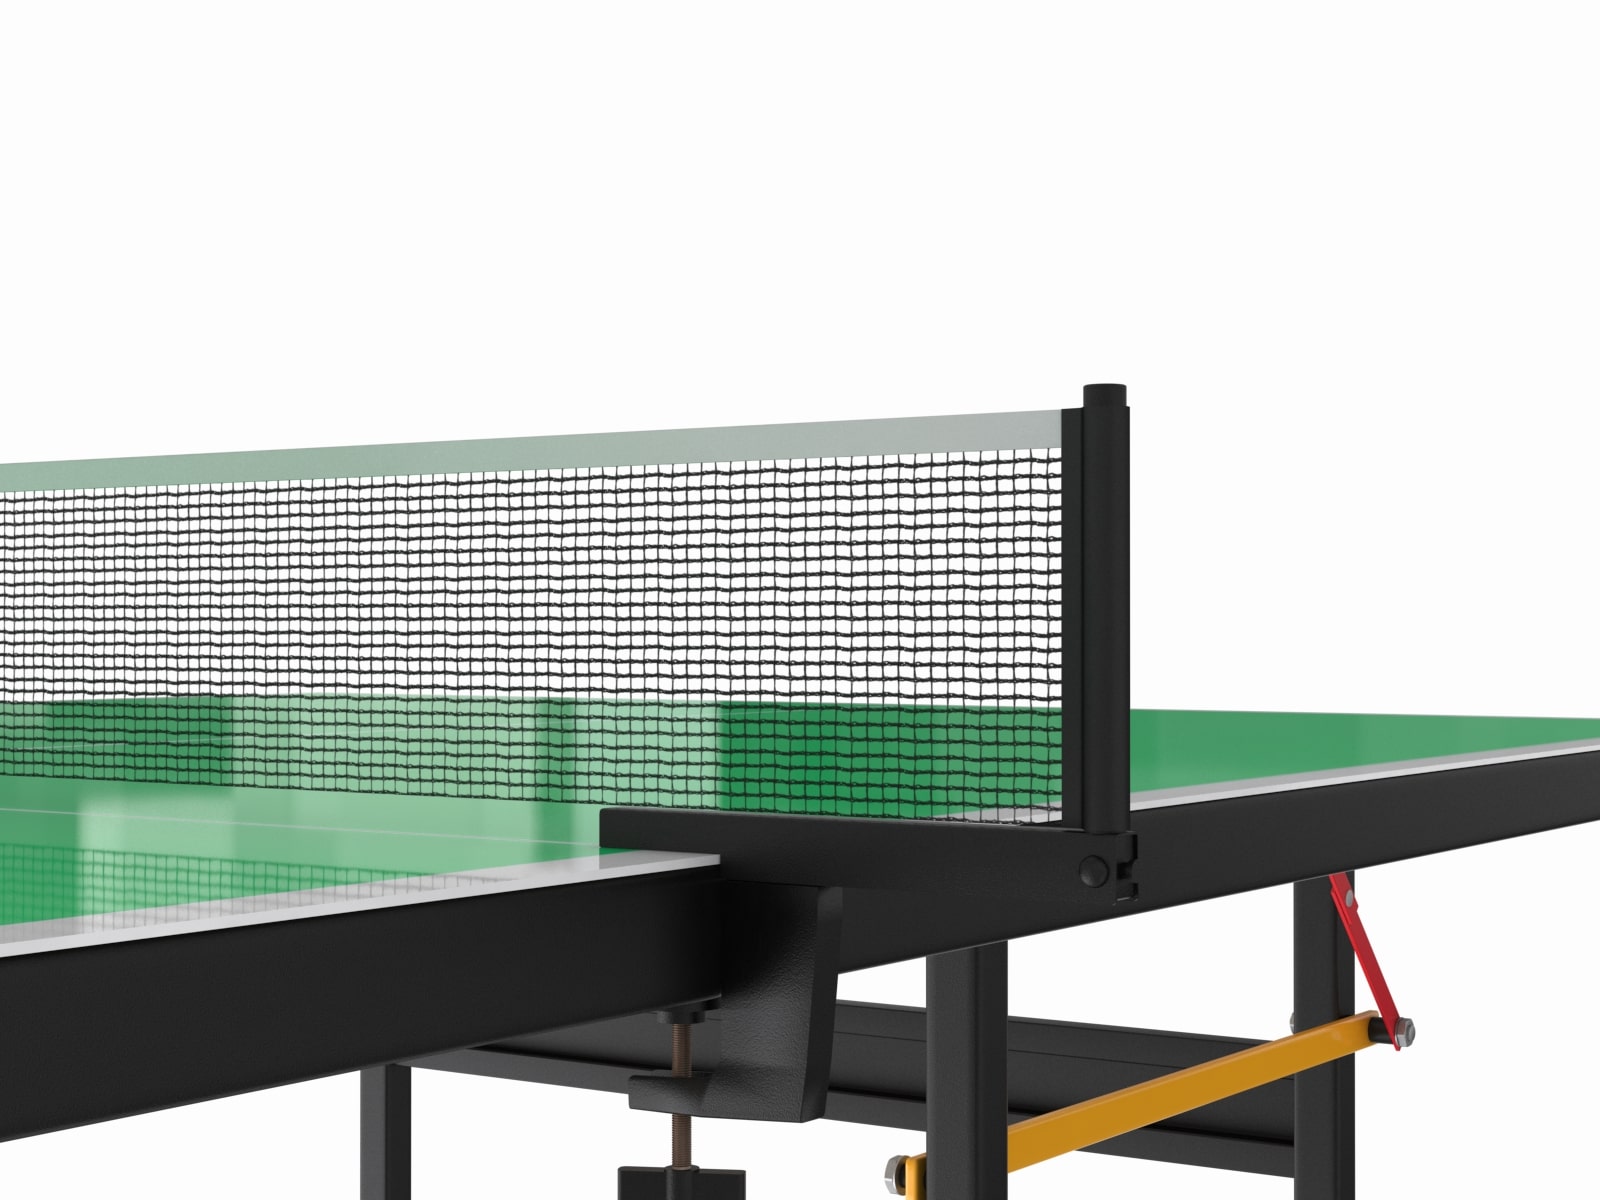 Теннисный стол UNIX line outdoor 6 мм (зелёный)